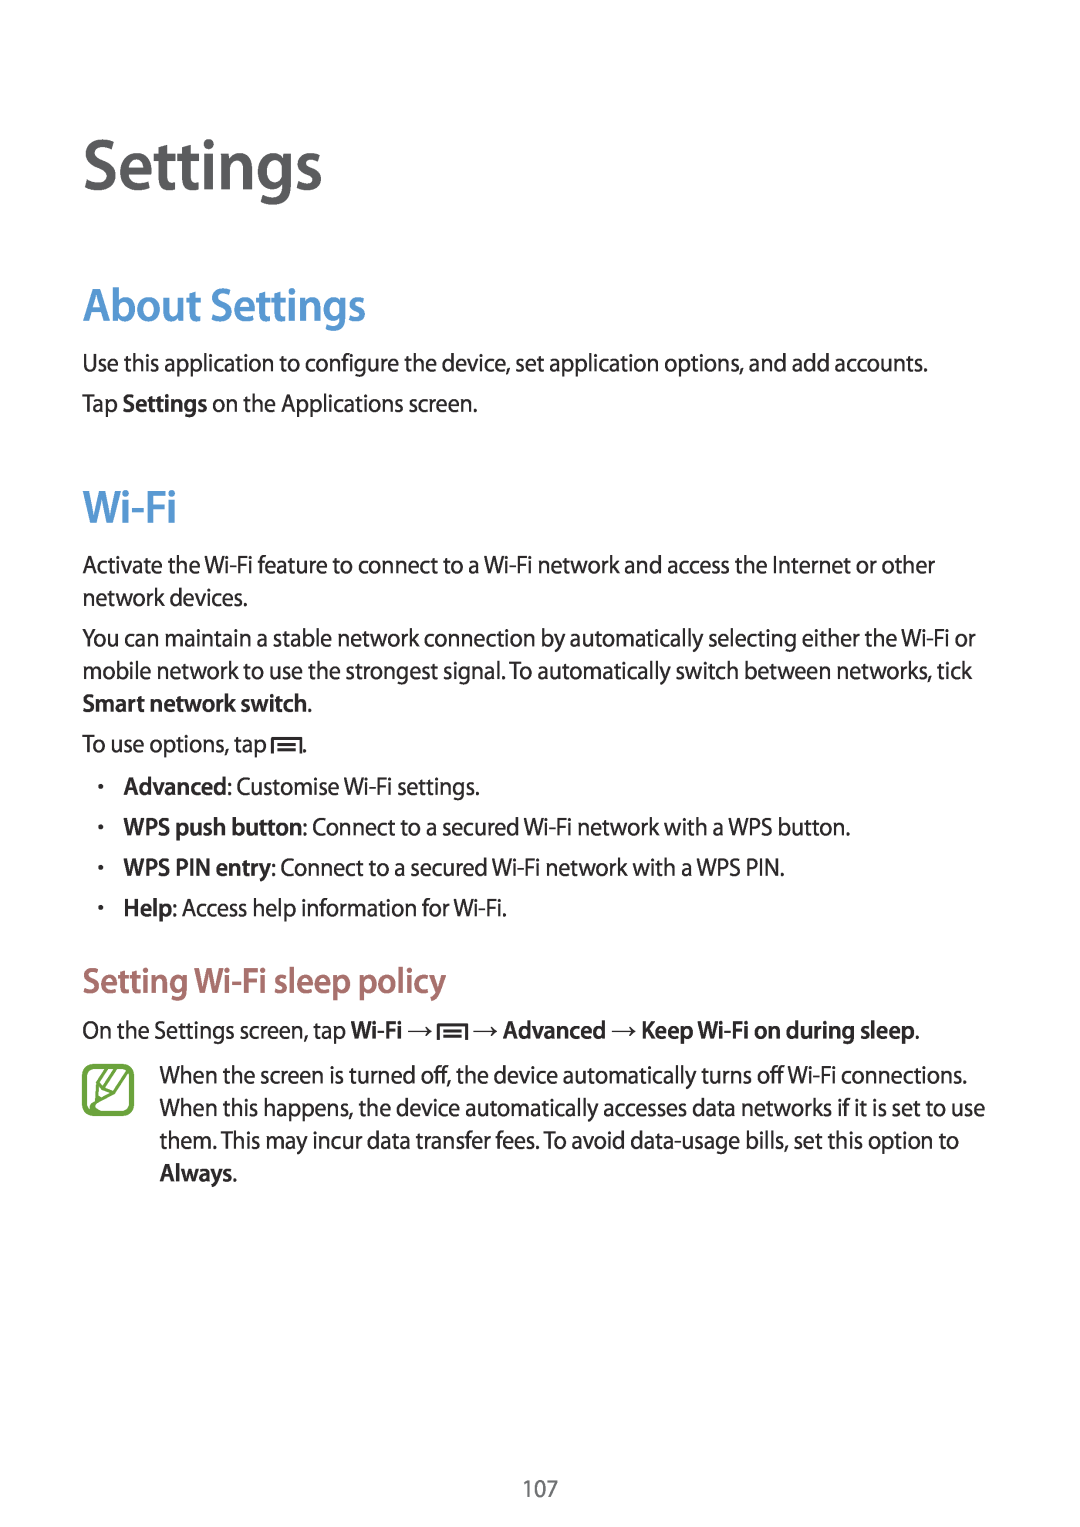 Samsung SM-T3150ZWAPAN, SM-T3150ZWAVD2, SM-T3150ZWADBT, SM-T3150ZWADTM About Settings, Setting Wi-Fi sleep policy 